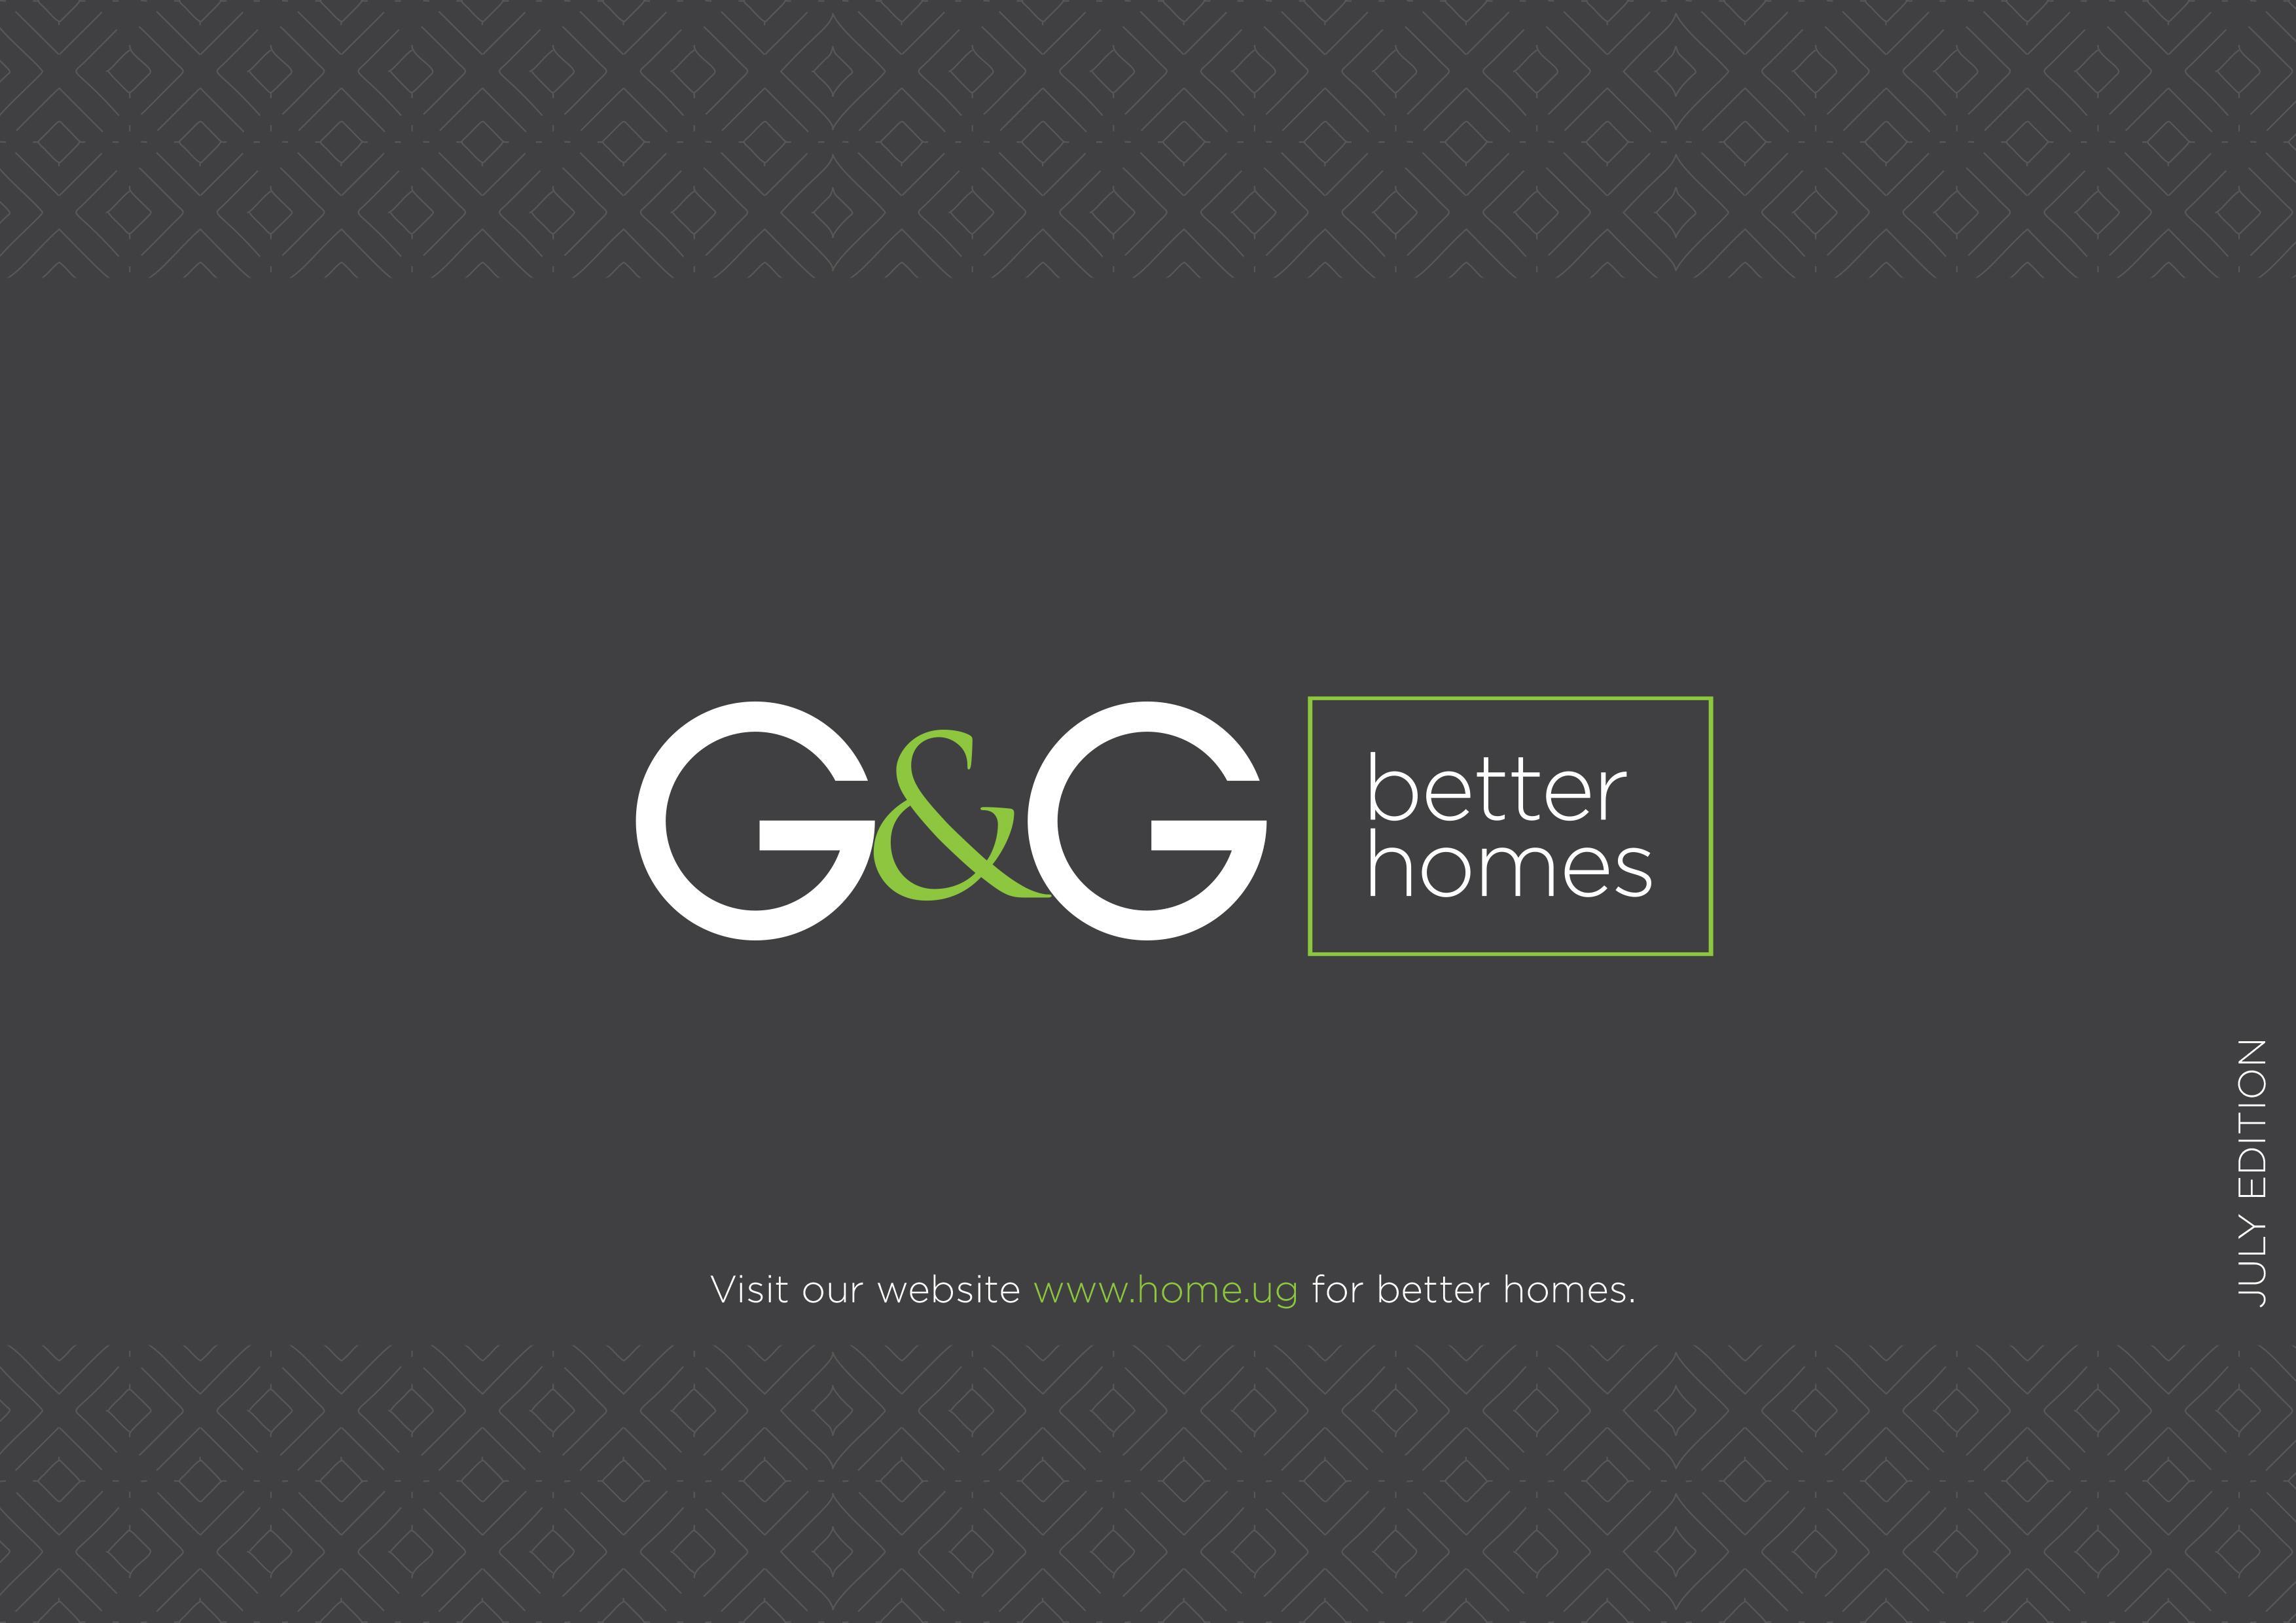 Poet Logo - G&G better homes – Gideon Poet